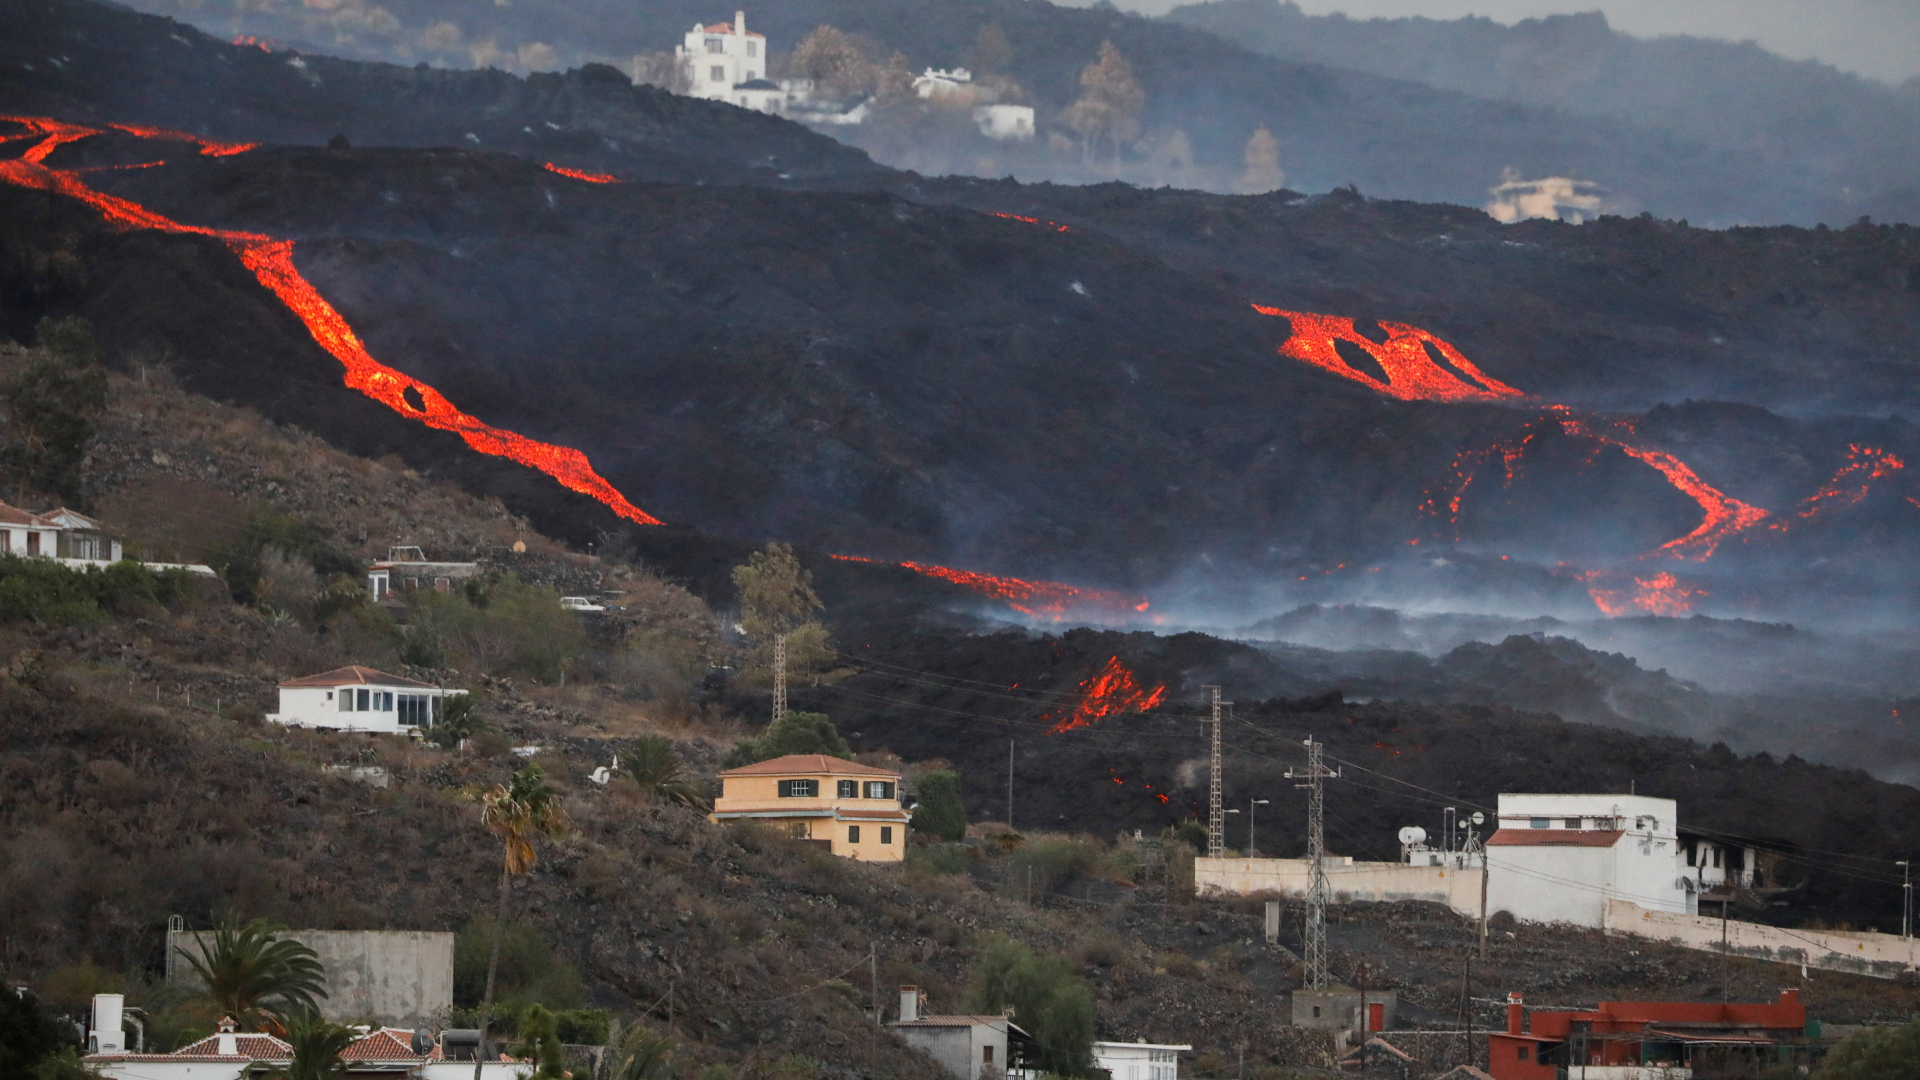 Lavaströme in der Nähe von Häusern auf der Kanareninsel La Palma.  | REUTERS